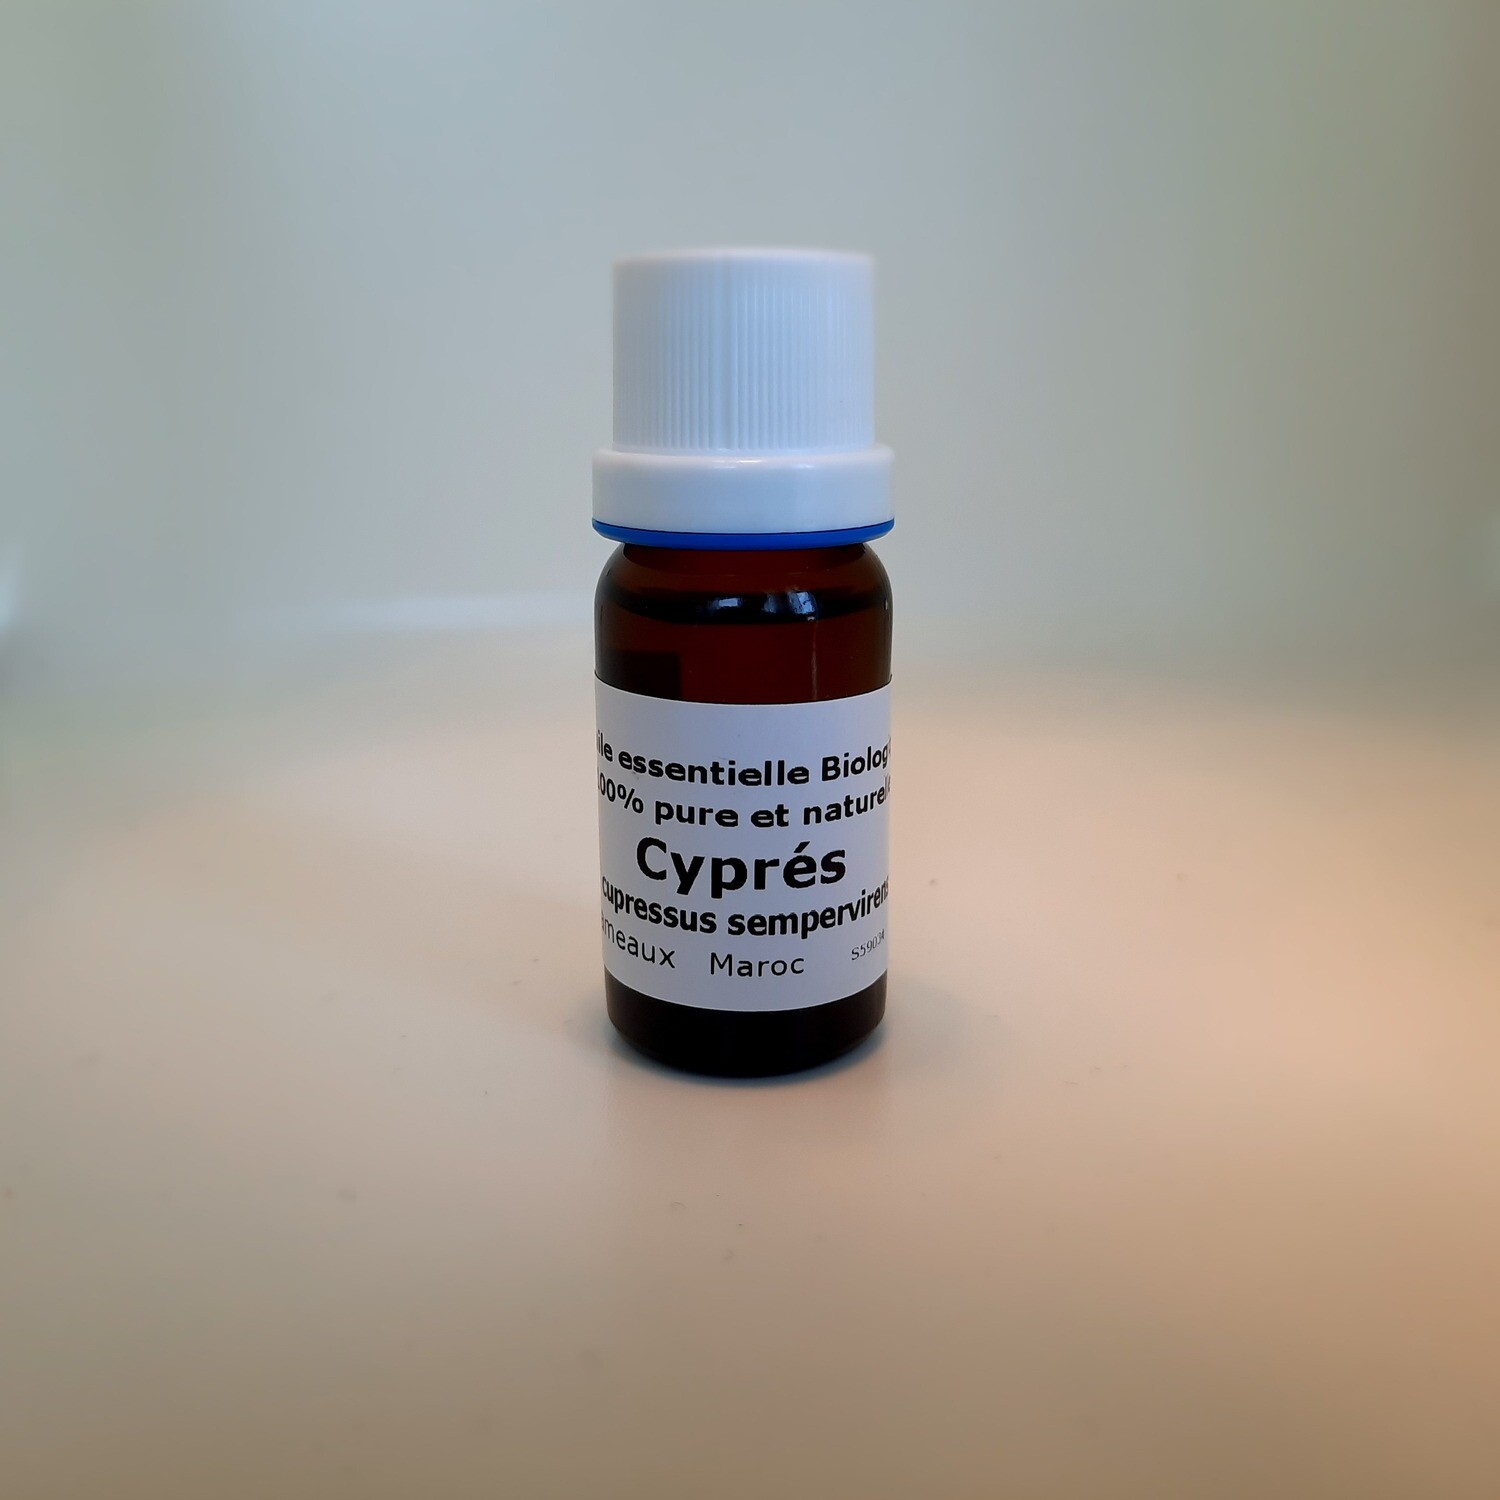 Cyprès   Cupressus sempervirens